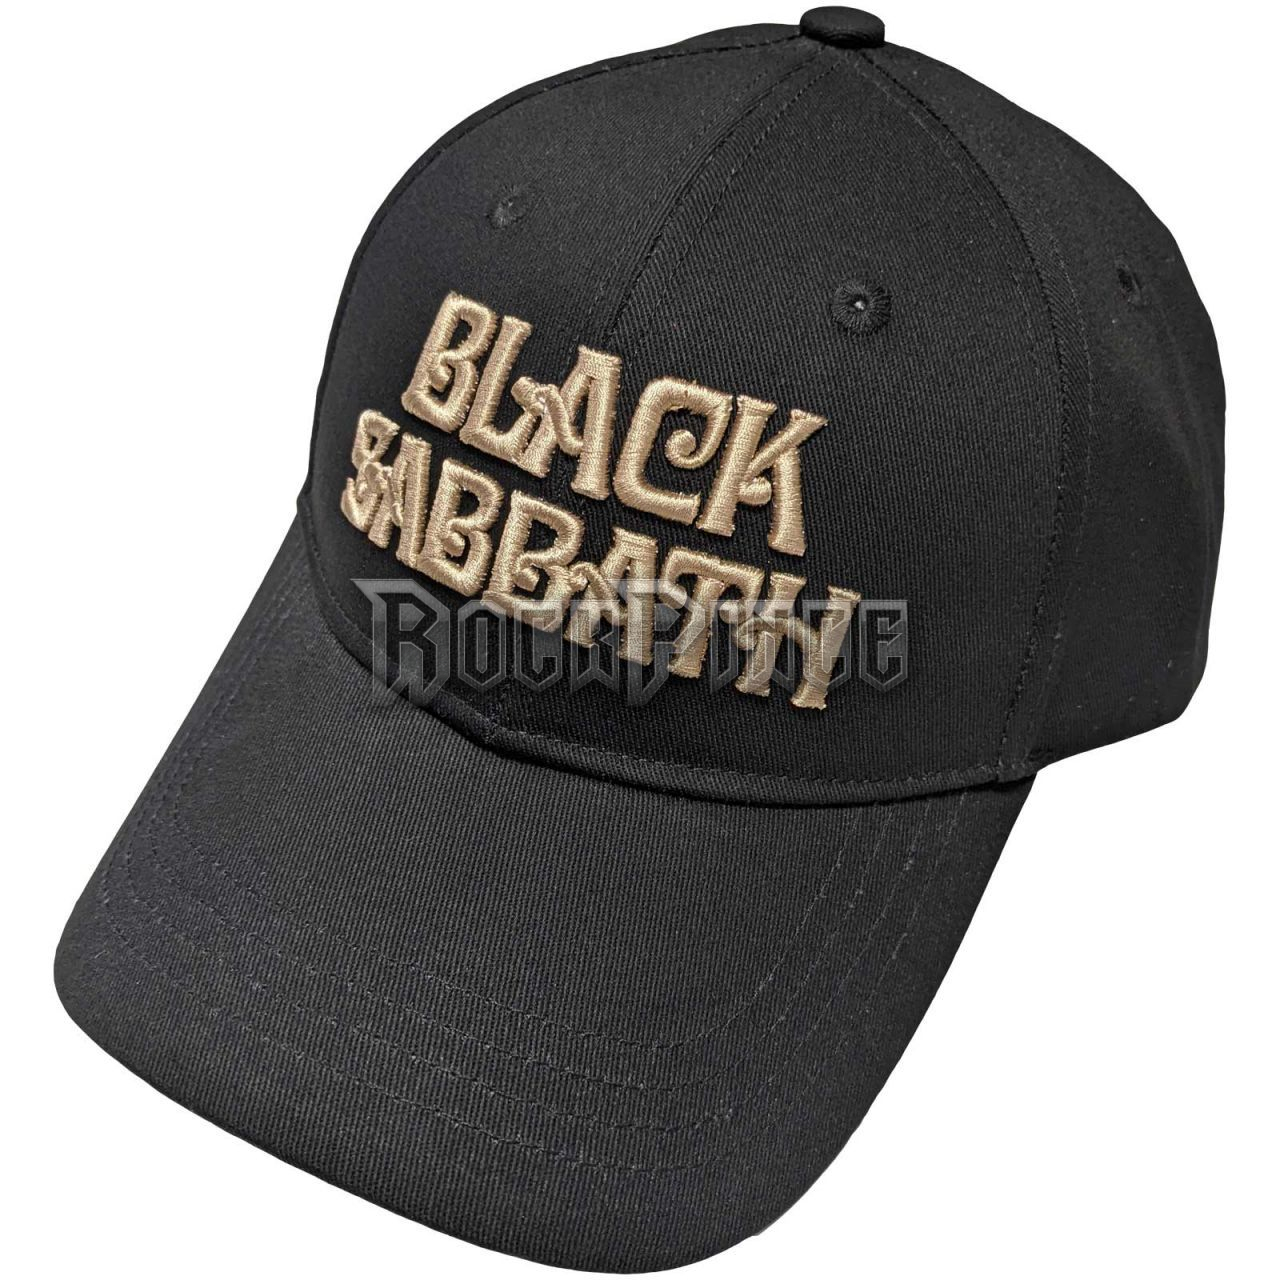 Black Sabbath - Text Logo - baseball sapka - BSCAP04B